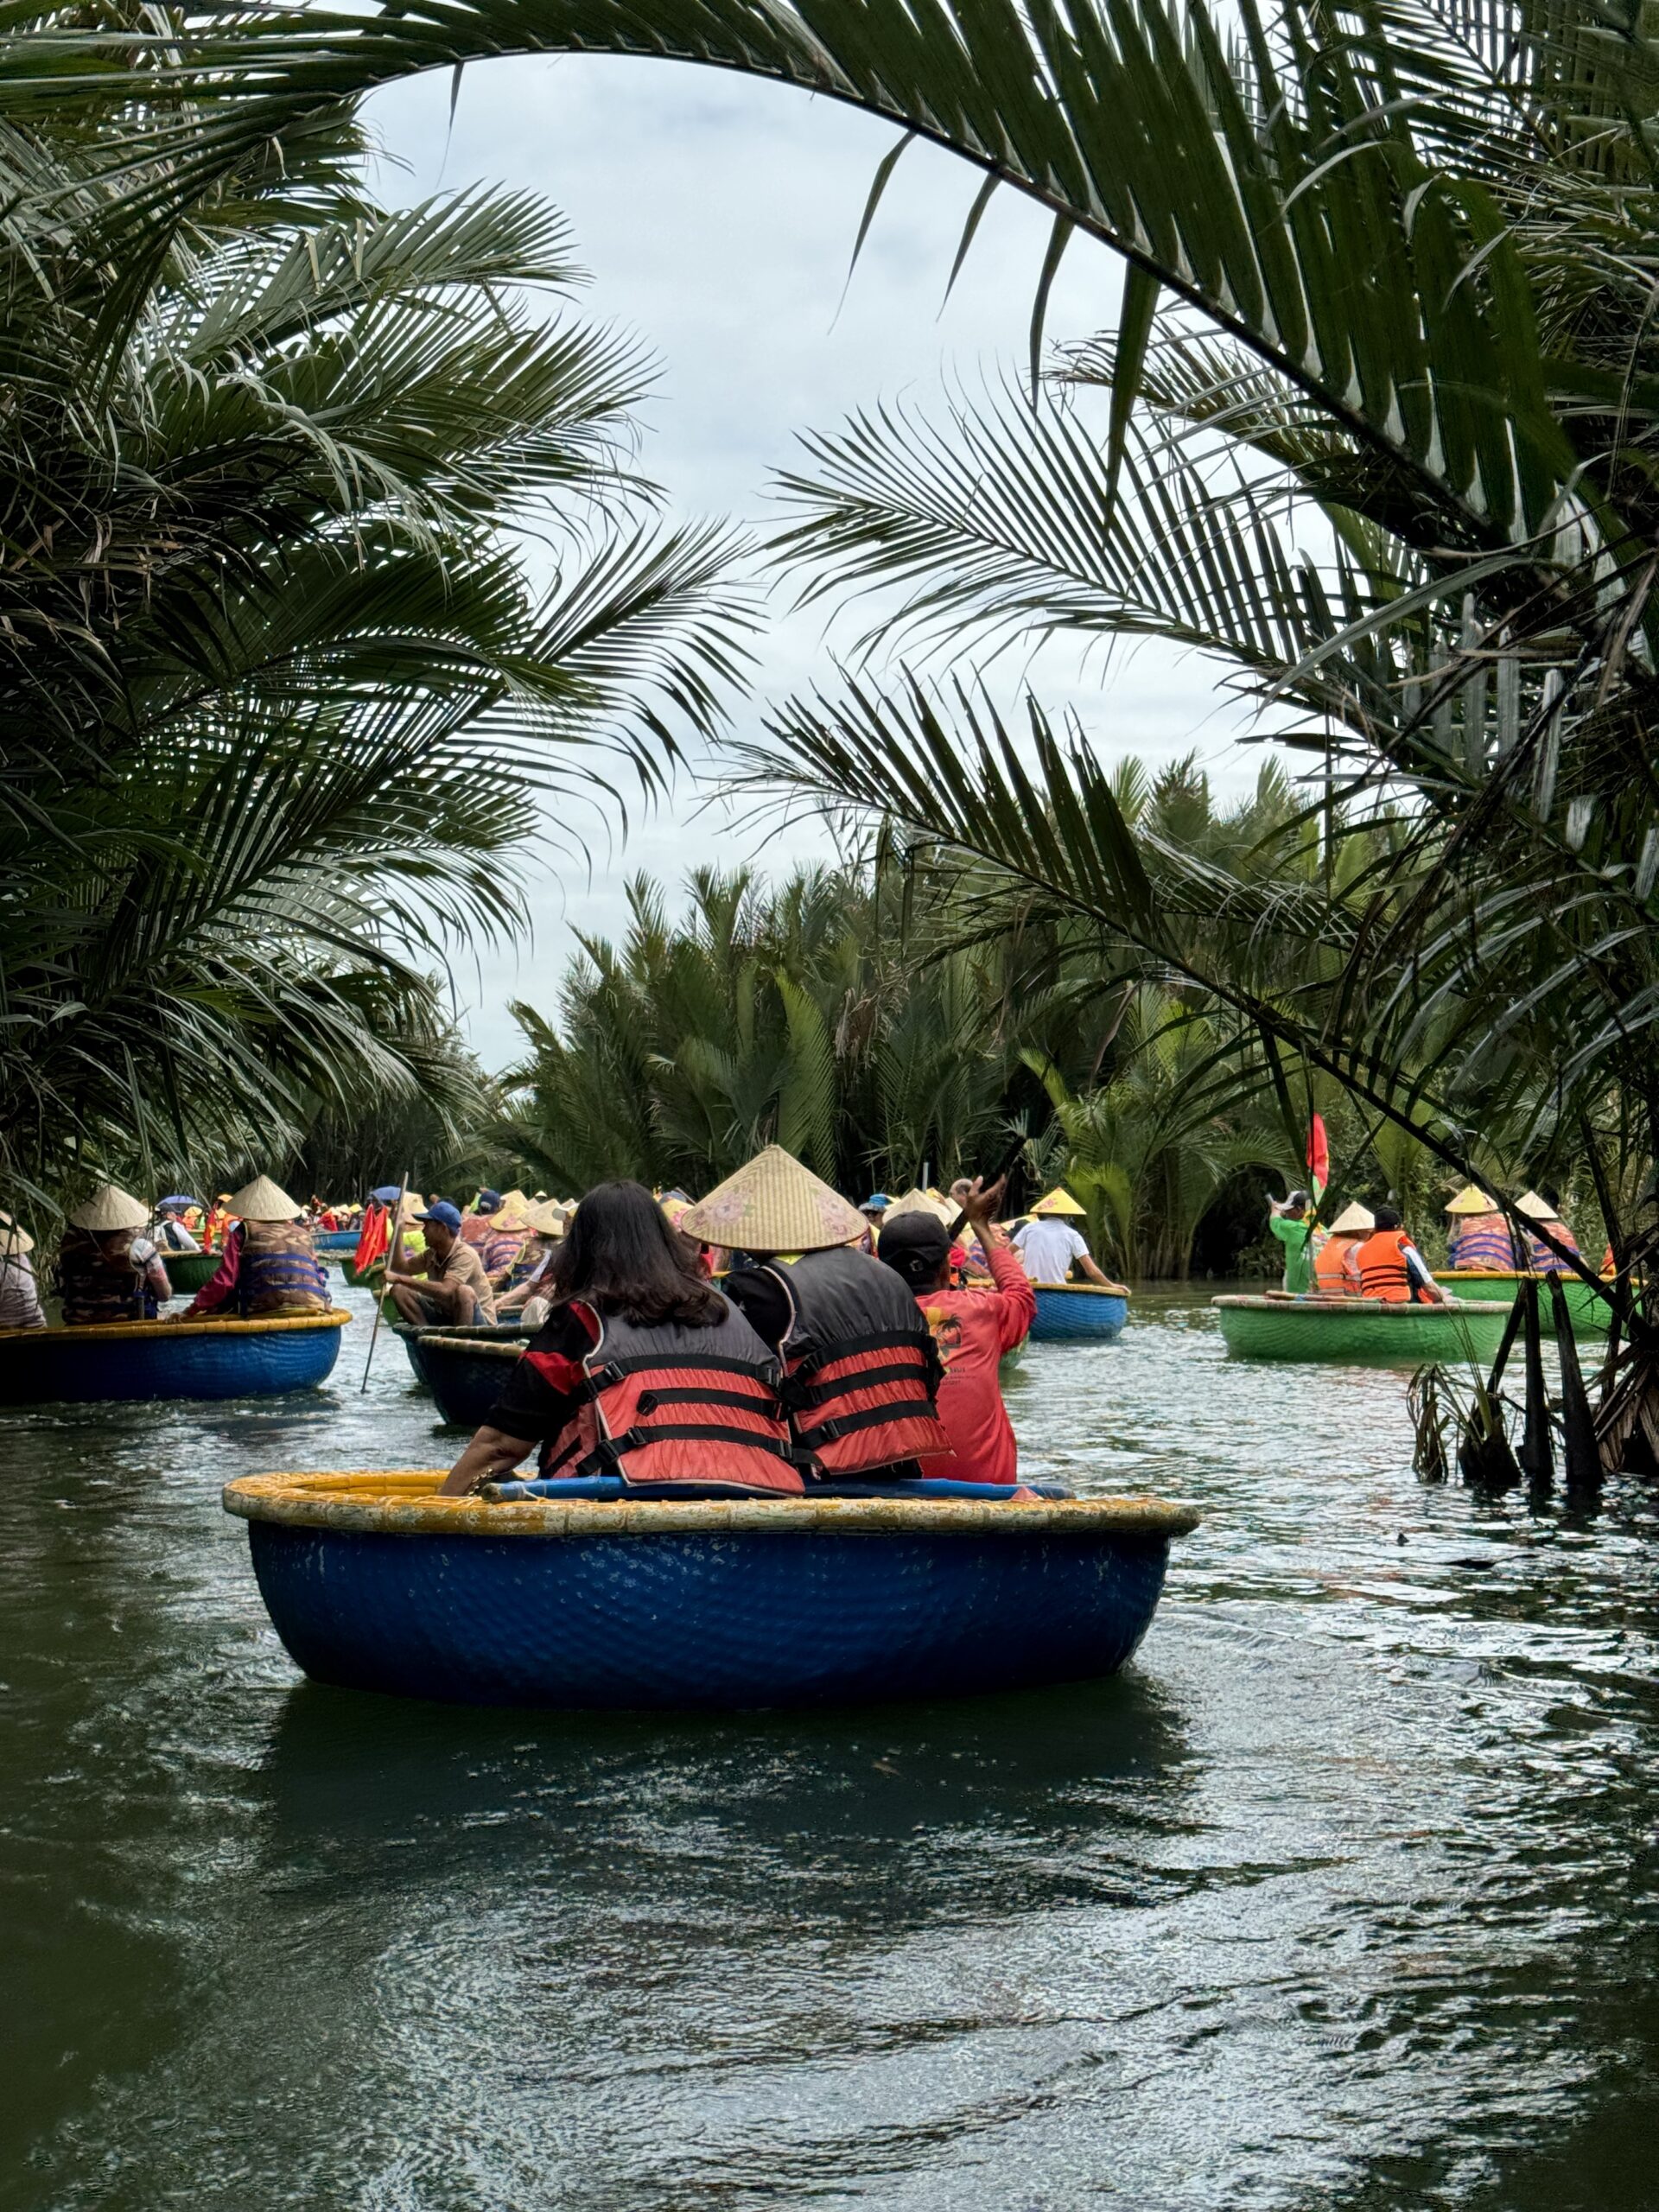 kokosovyj les v Hojane Vetnam